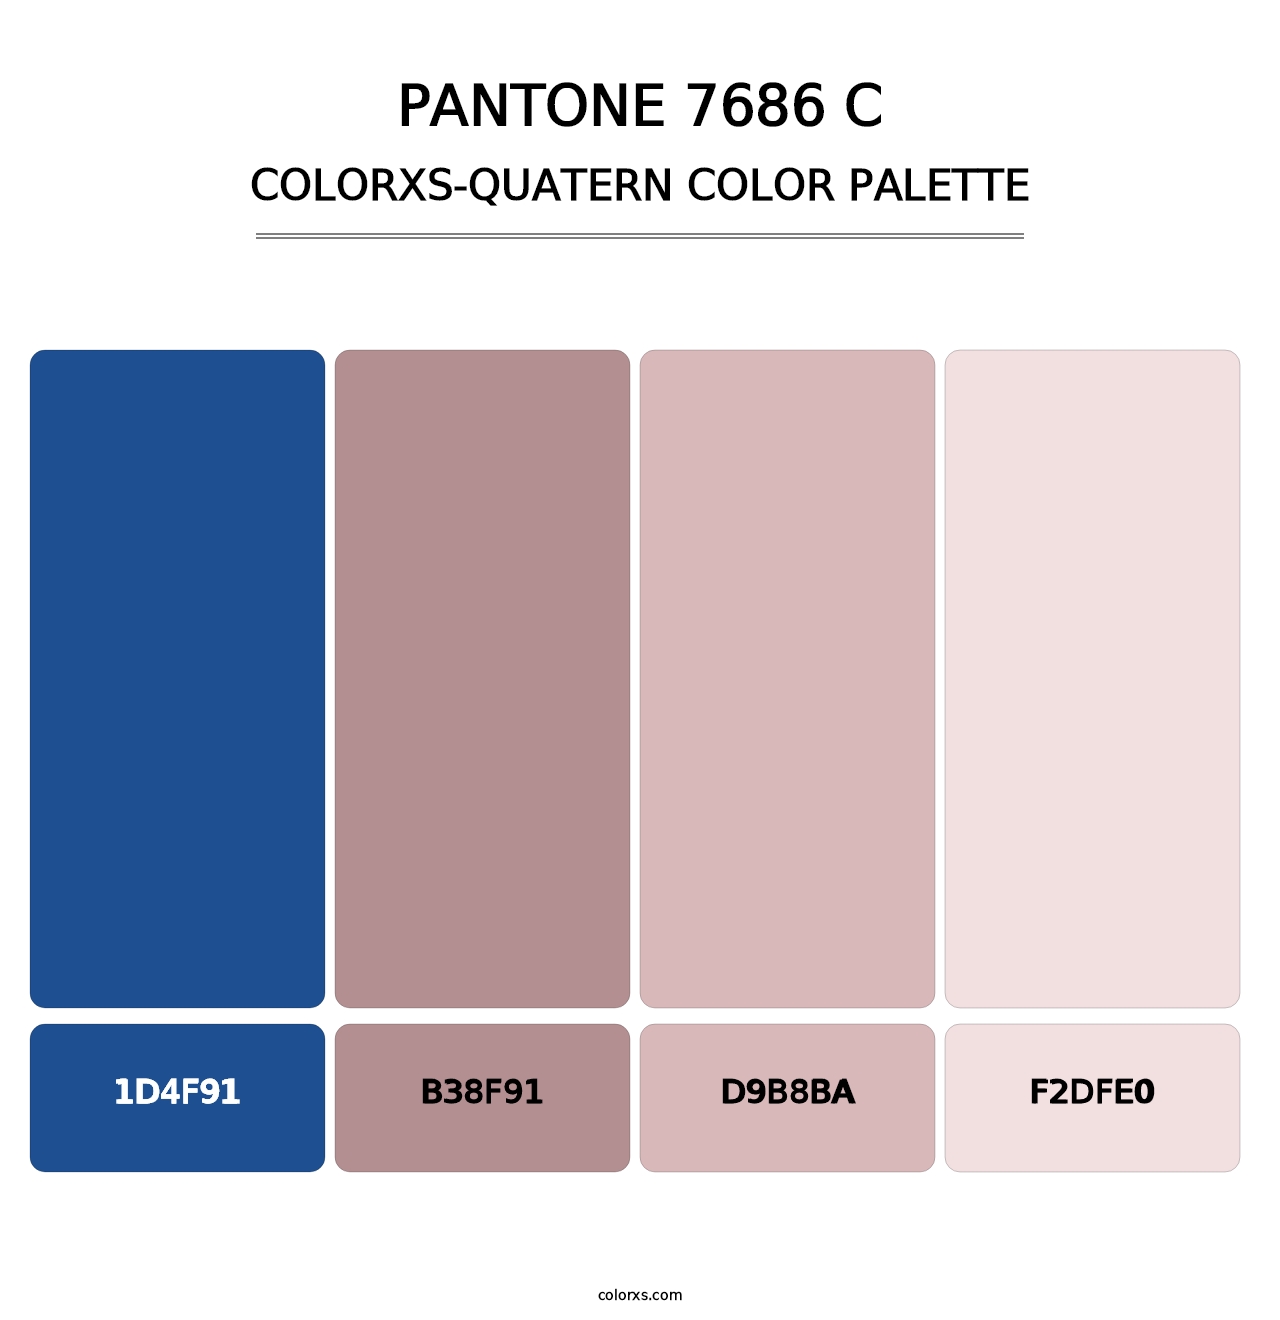 PANTONE 7686 C - Colorxs Quatern Palette